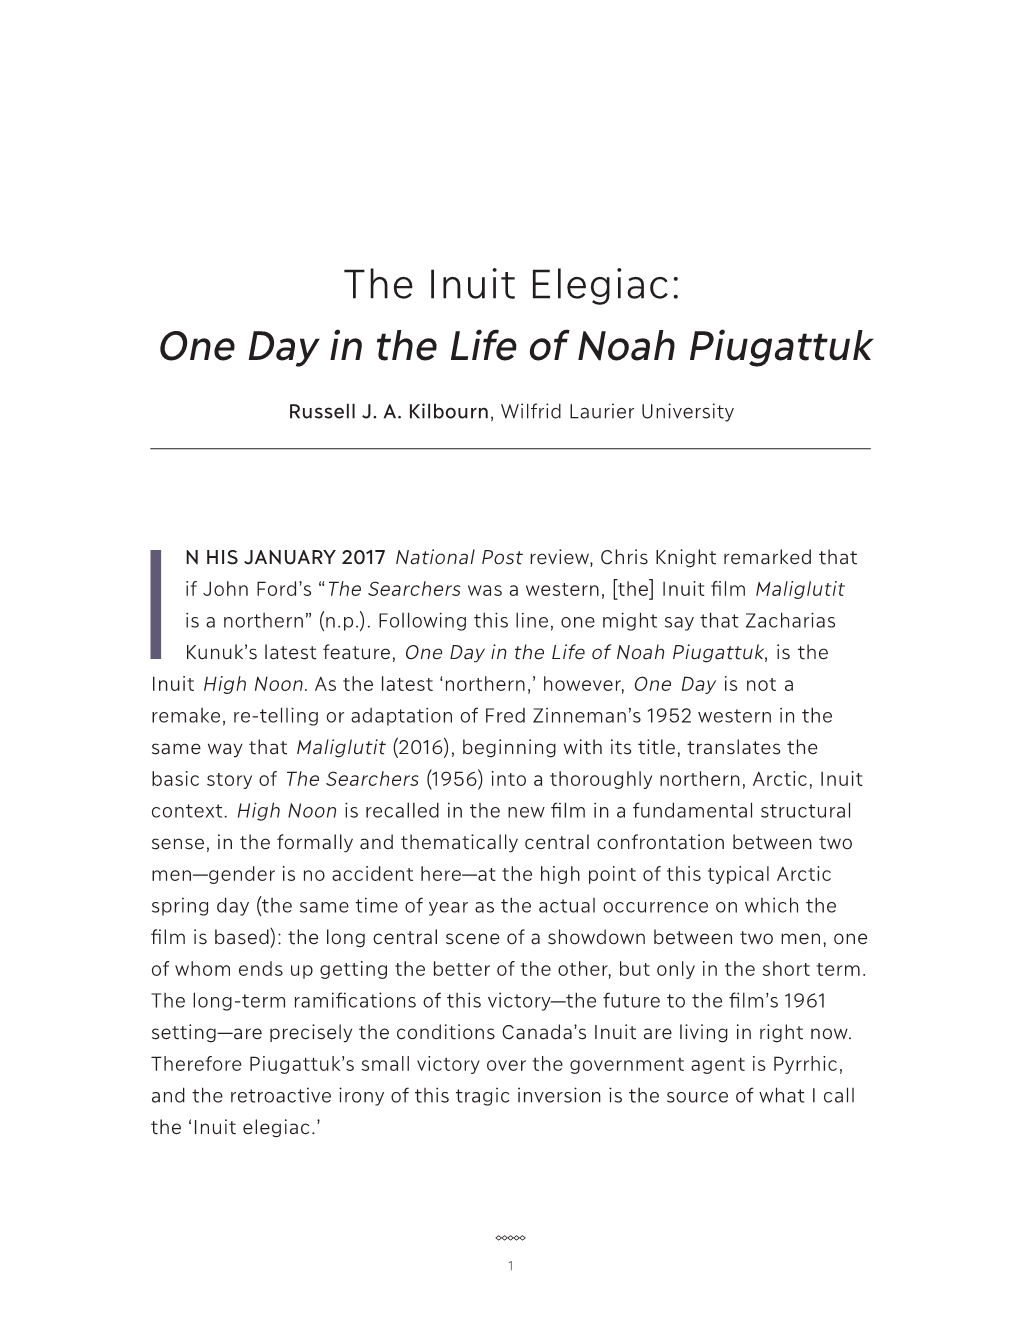 One Day in the Life of Noah Piugattuk